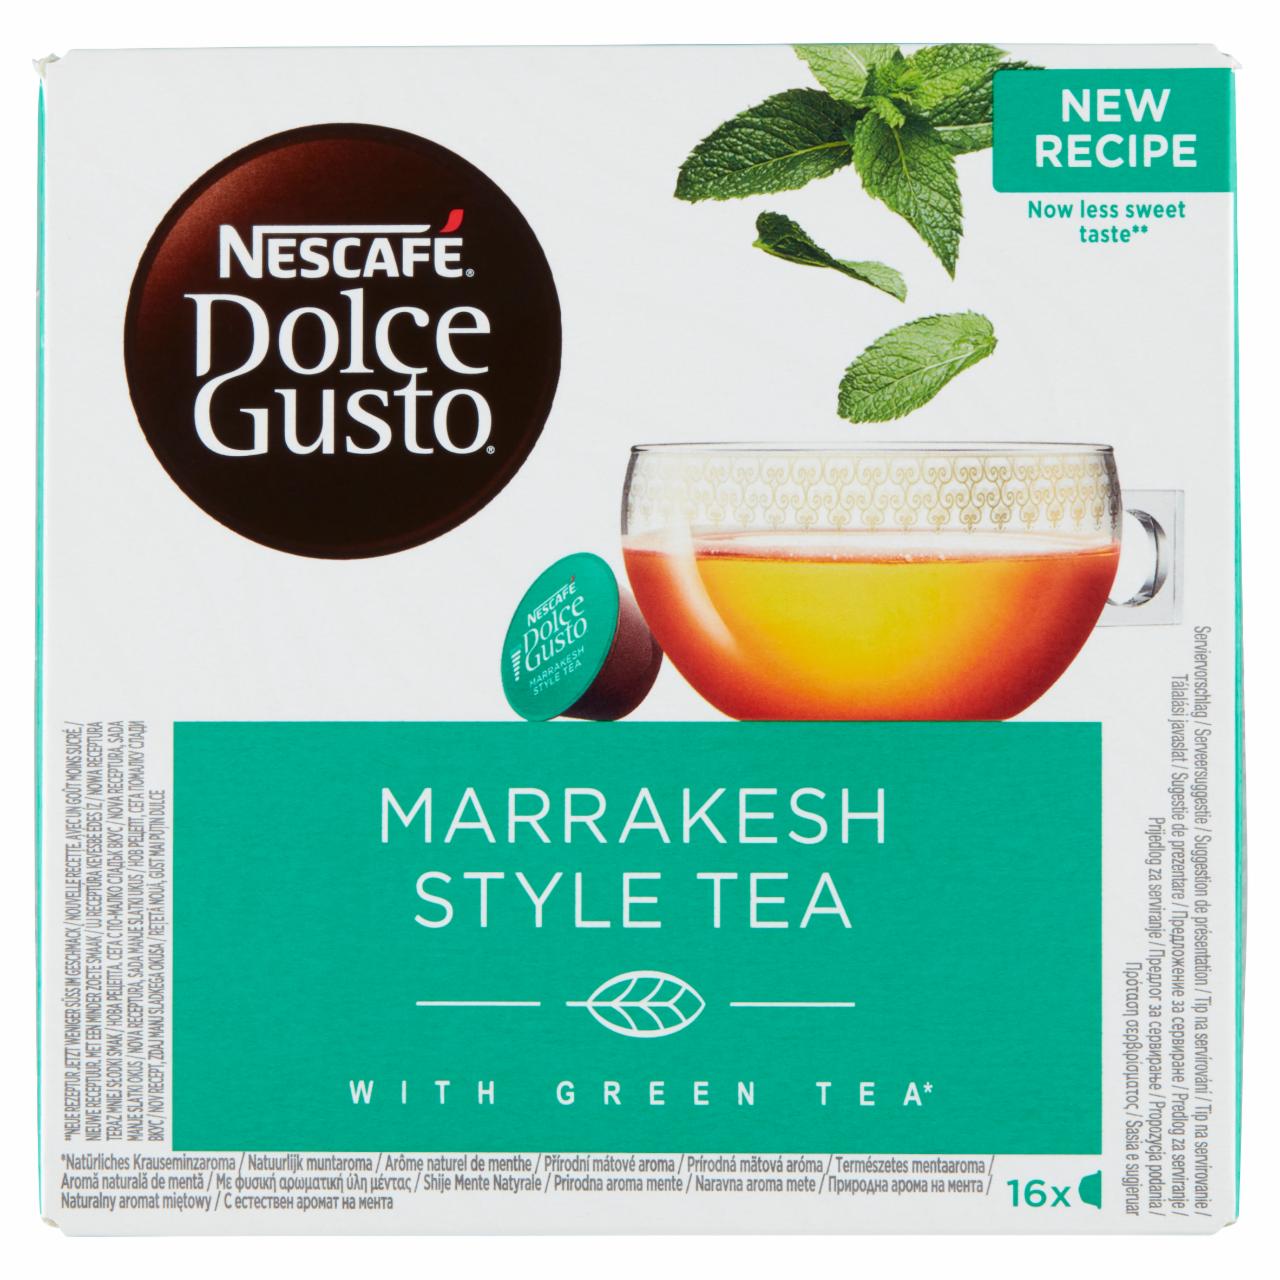 Zdjęcia - Nescafé Dolce Gusto Marrakesh Style Tea Napój z zieloną herbatą smak miętowy 82,7 g (16 x 5,17 g)